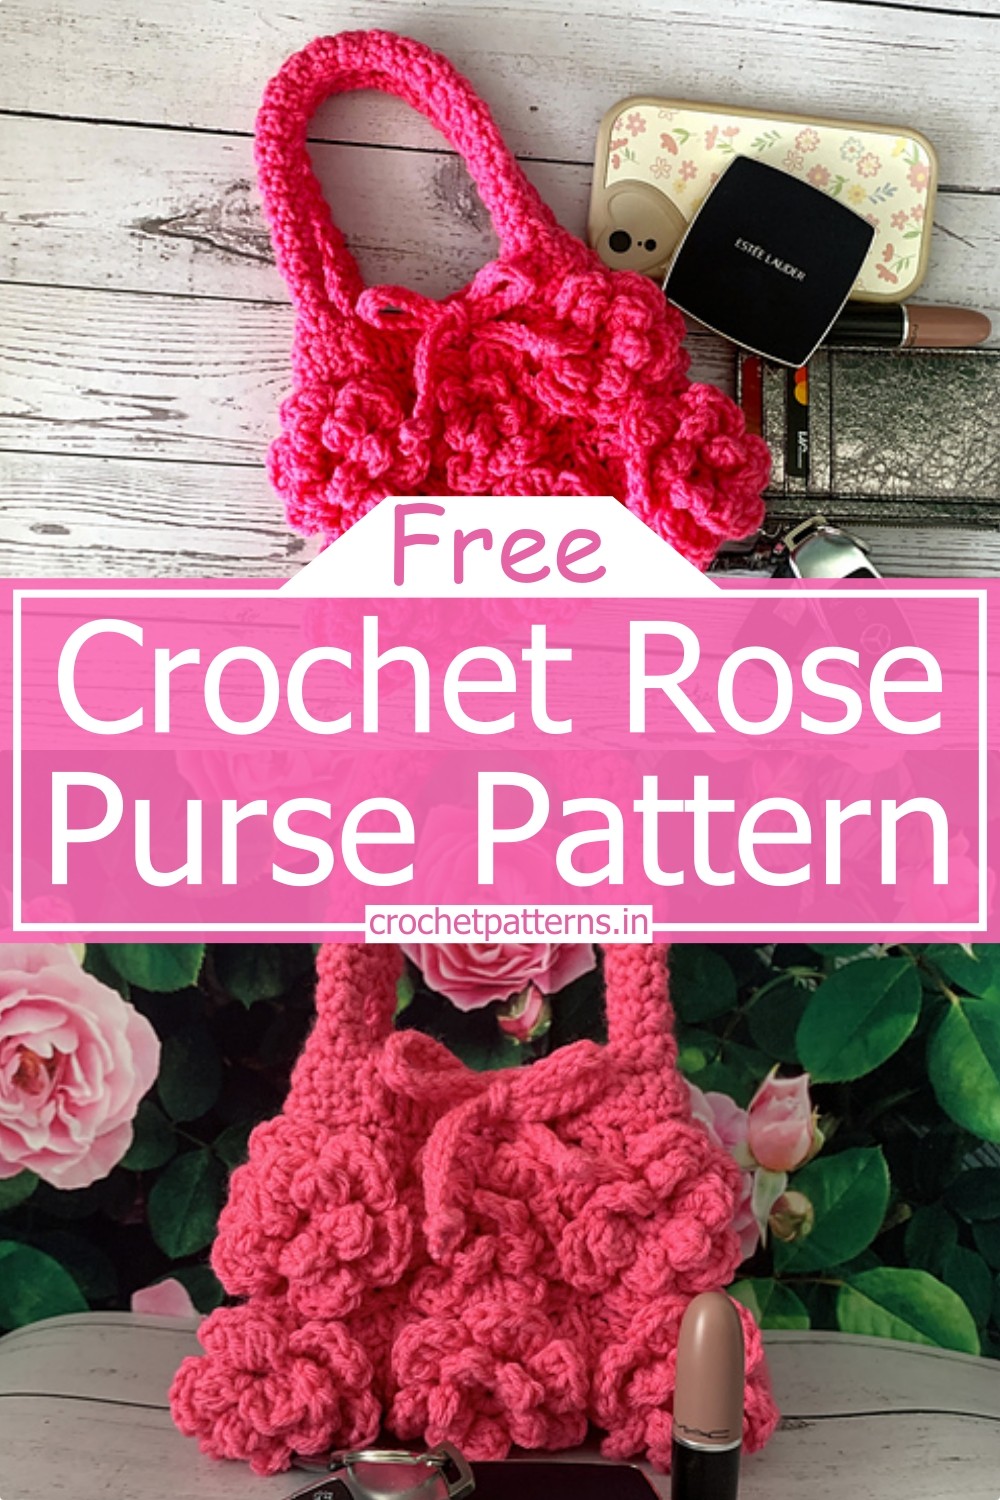 Crochet Rose Purse Pattern